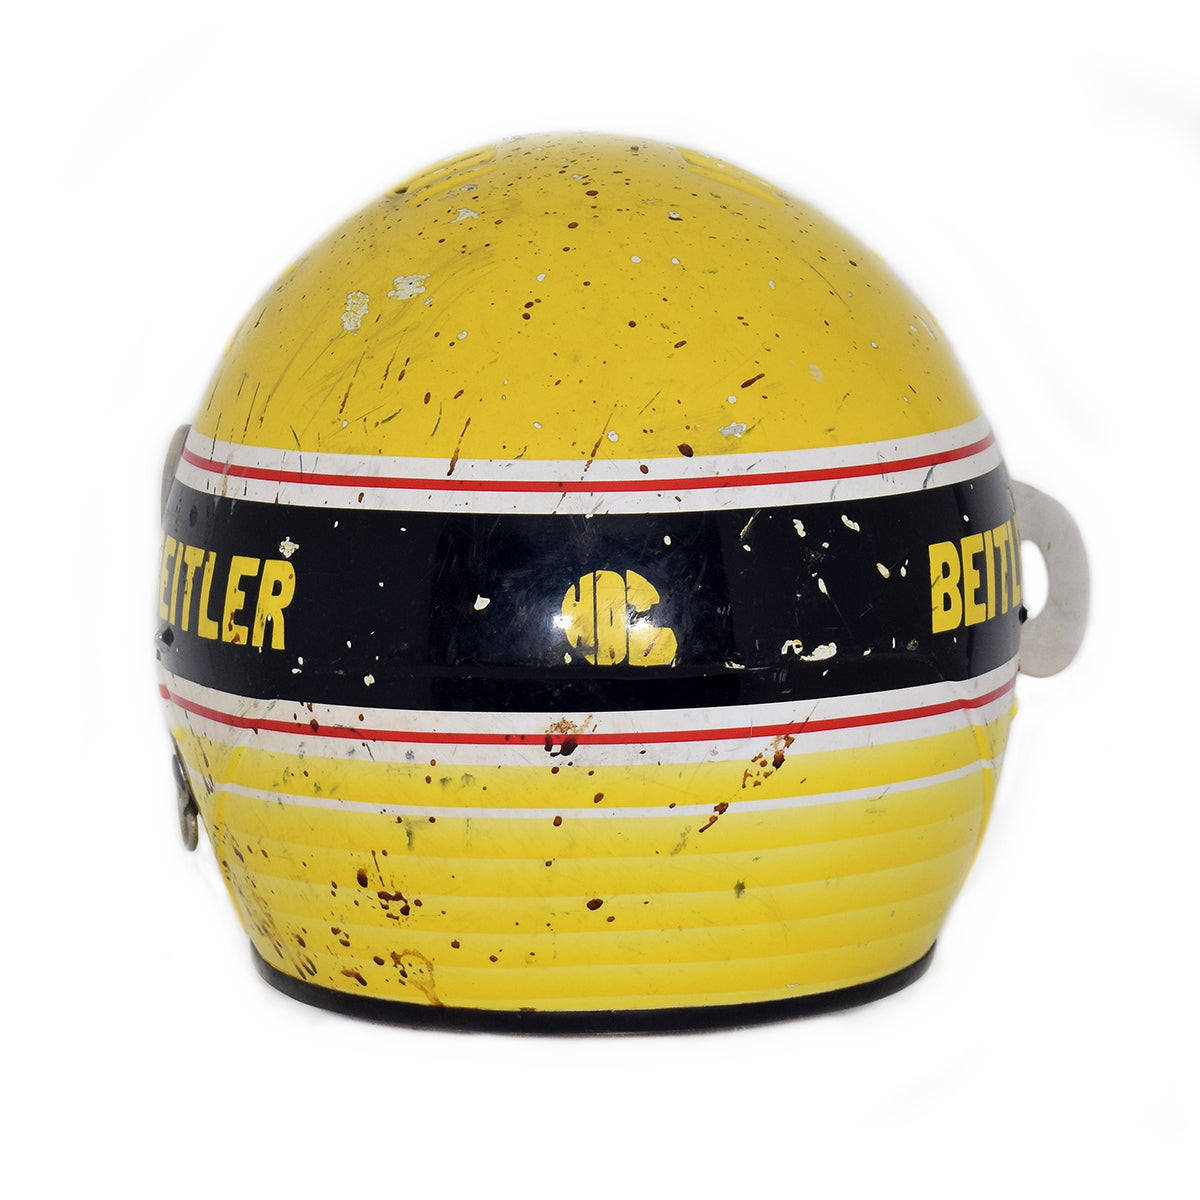 1990's Steve Beitler World of Outlaws Sprint Car Helmet